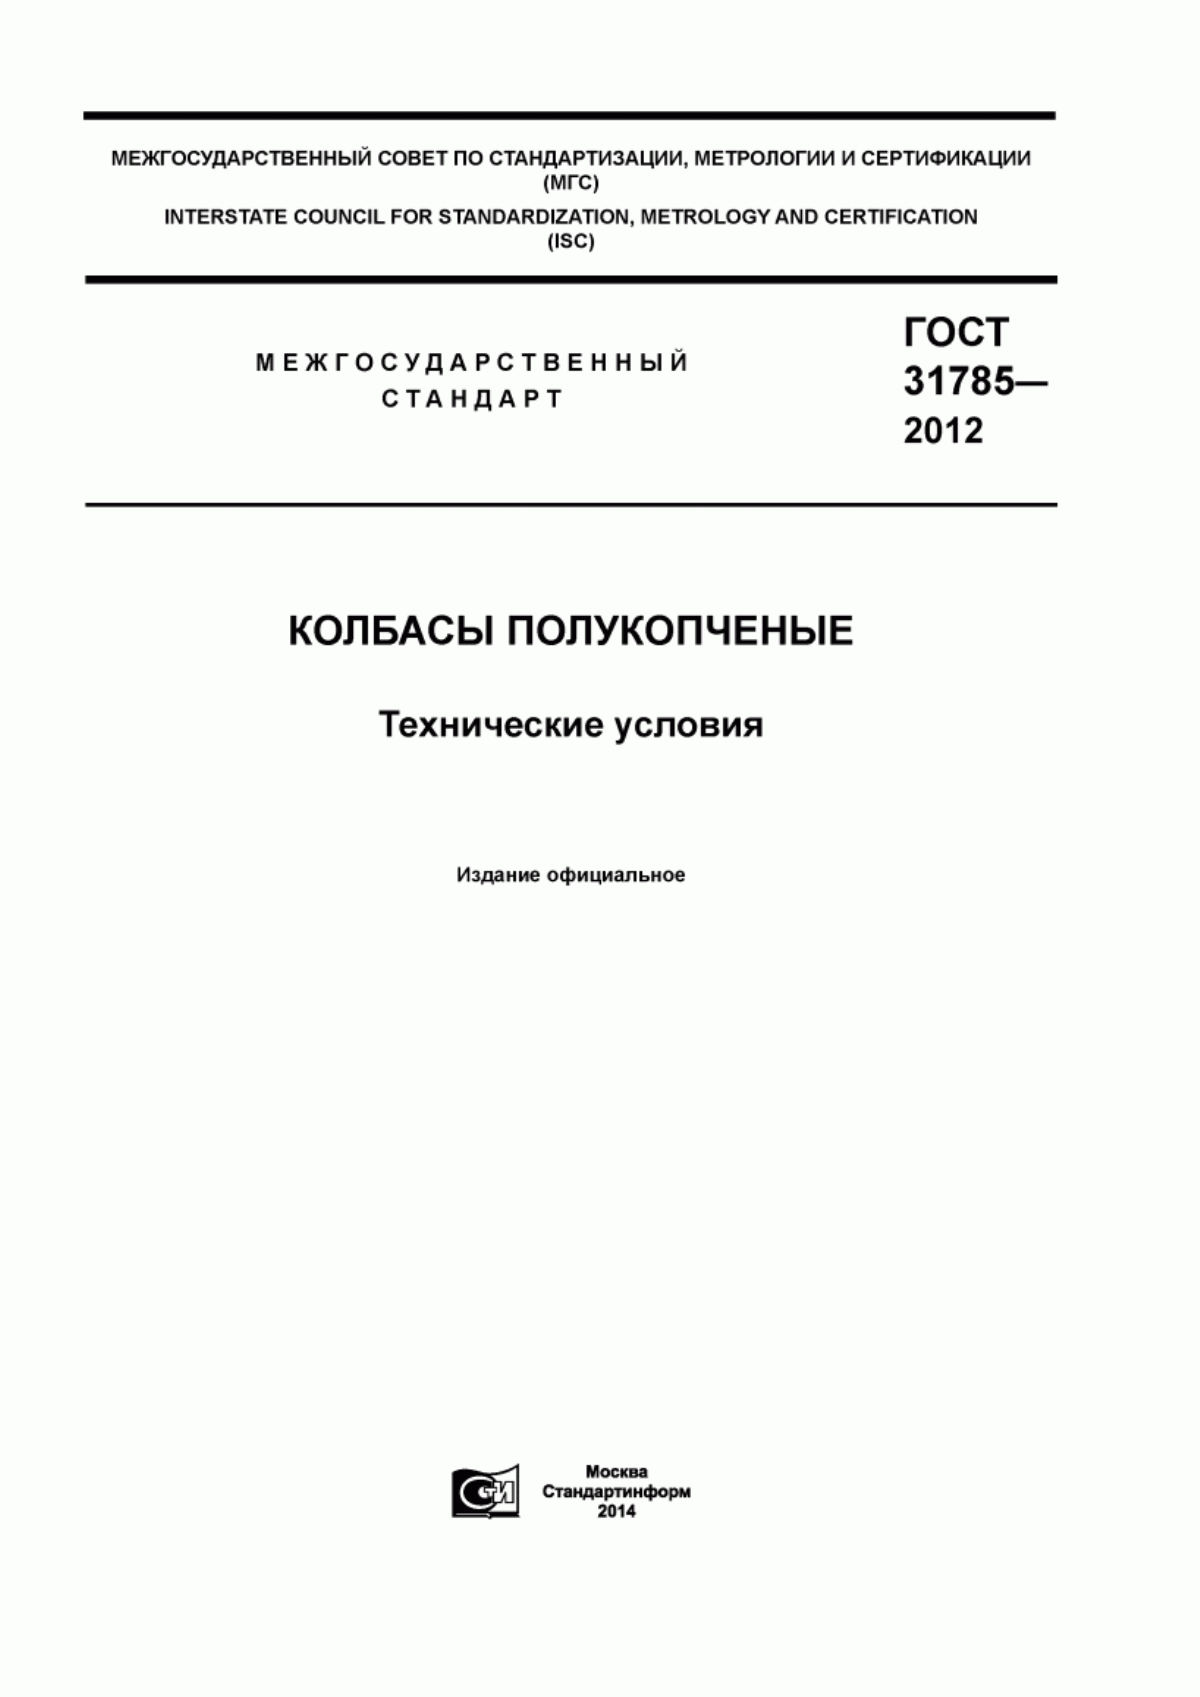 ГОСТ 31785-2012 Колбасы полукопченые. Технические условия